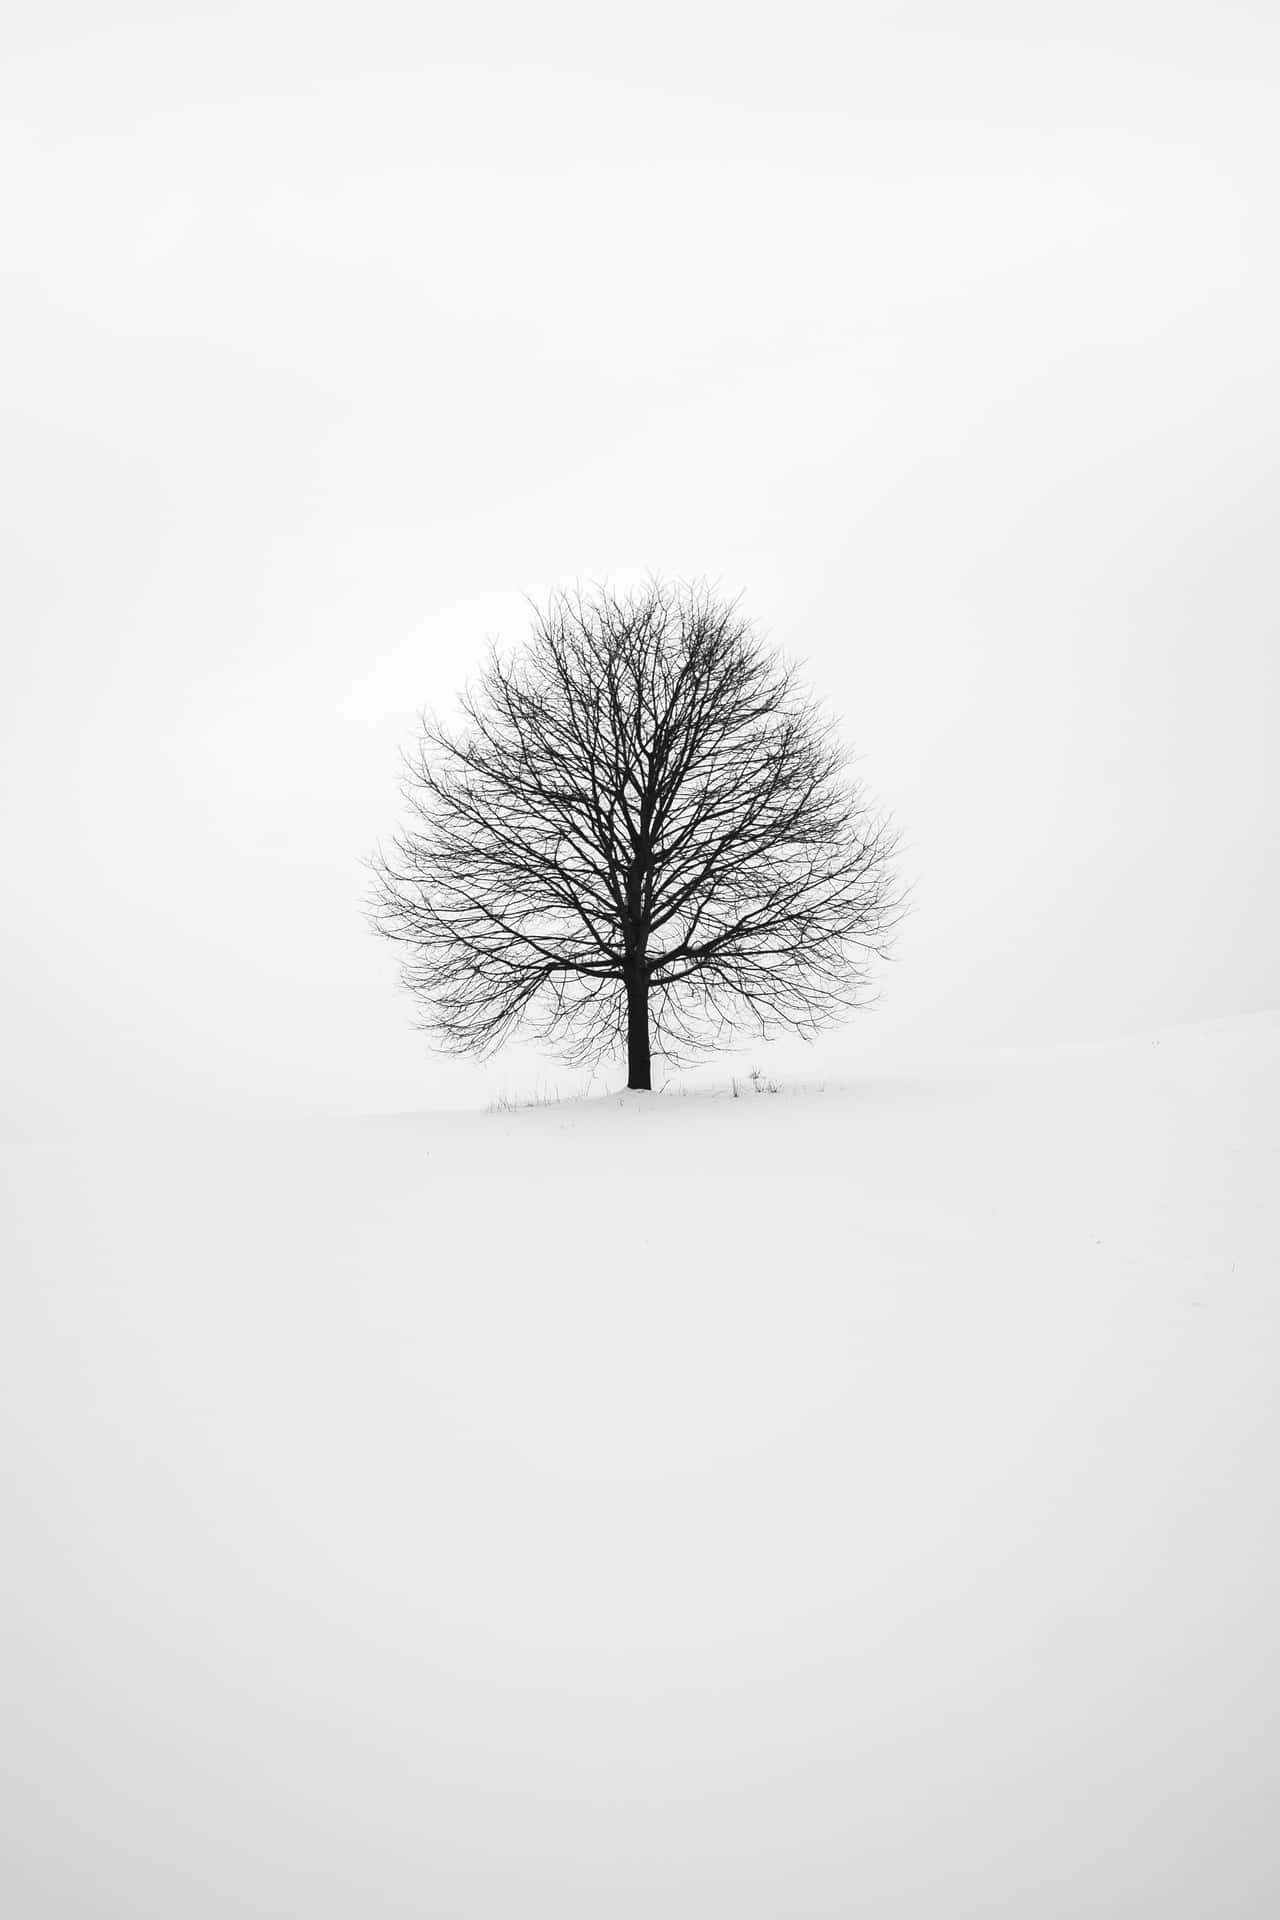 Unalbero Solitario In Un Campo Coperto Di Neve